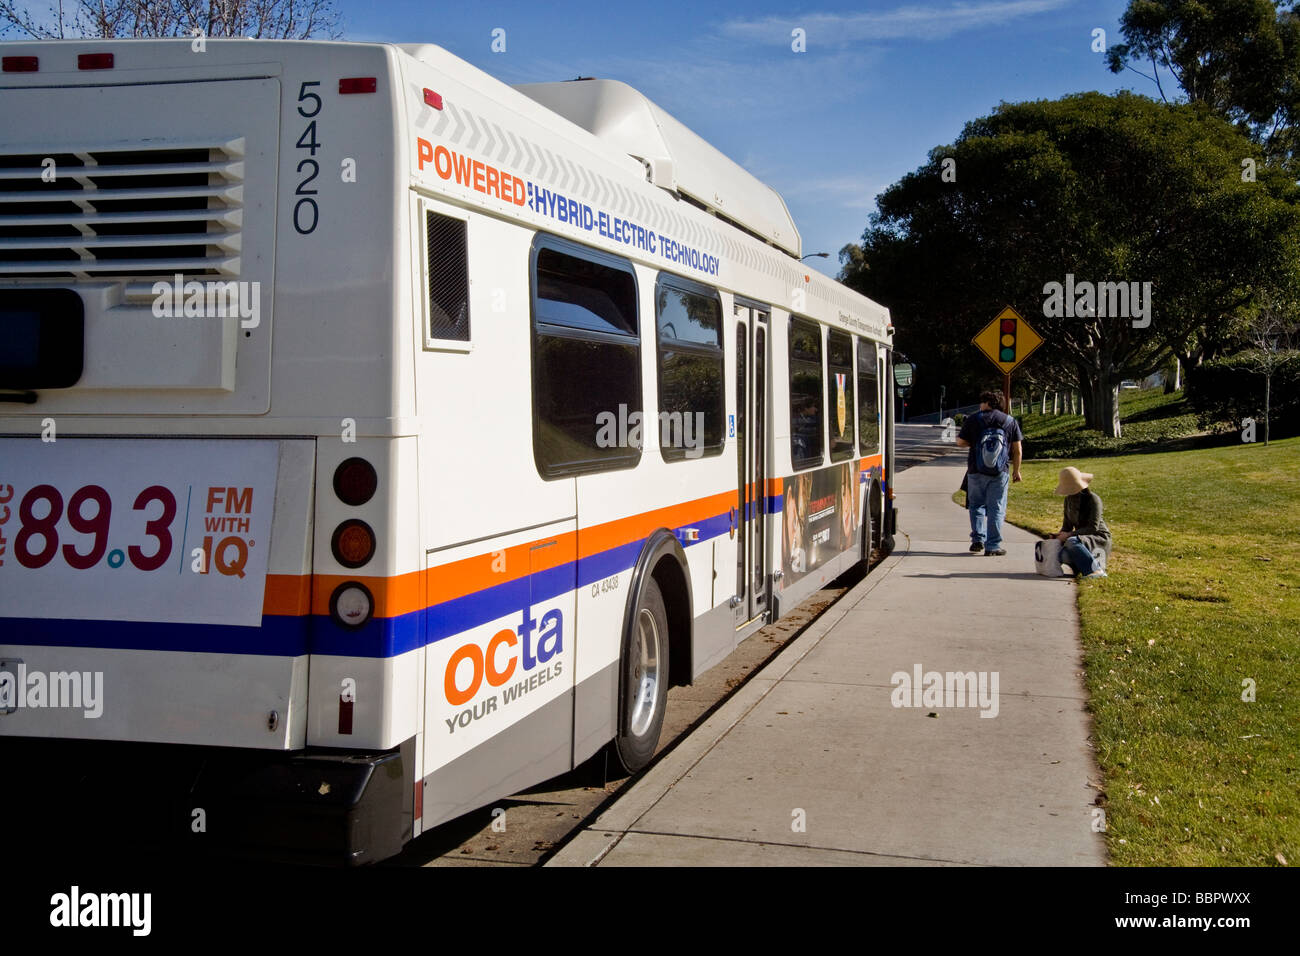 Utilizzando un basso inquinamento gas naturale ibrido elettrico la potenza di un autobus urbano attende i passeggeri a Irvine California USA Foto Stock